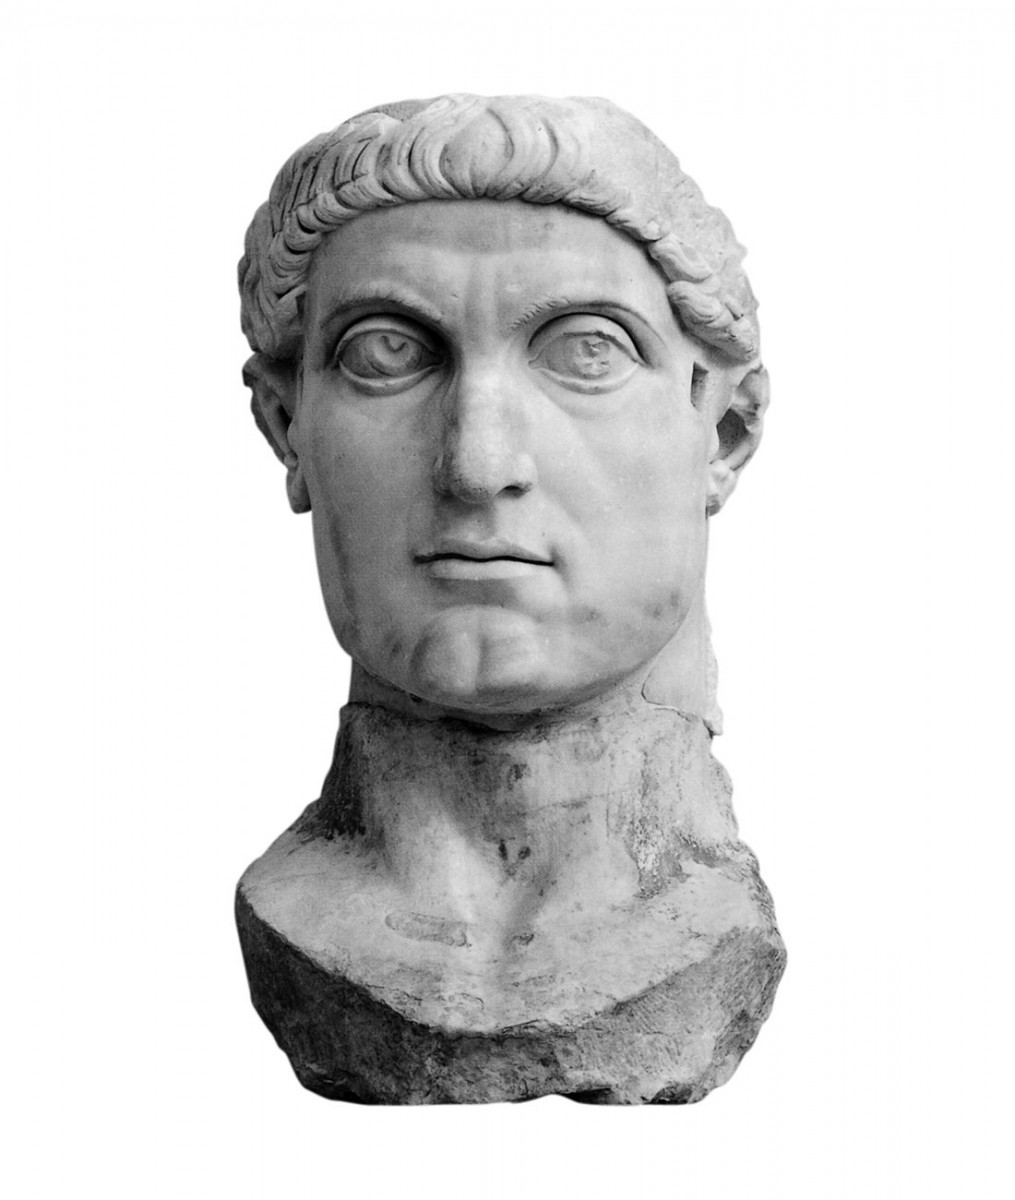 Κολοσσιαία κεφαλή του Κωνσταντίνου. Ρώμη, Μουσεία Καπιτωλίου. Το άγαλμα από το οποίο προέρχεται κατασκευάστηκε πιθανόν μετά τη νίκη του έναντι του Μαξεντίου στη Μουλβία γέφυρα (312 μ.Χ.). 